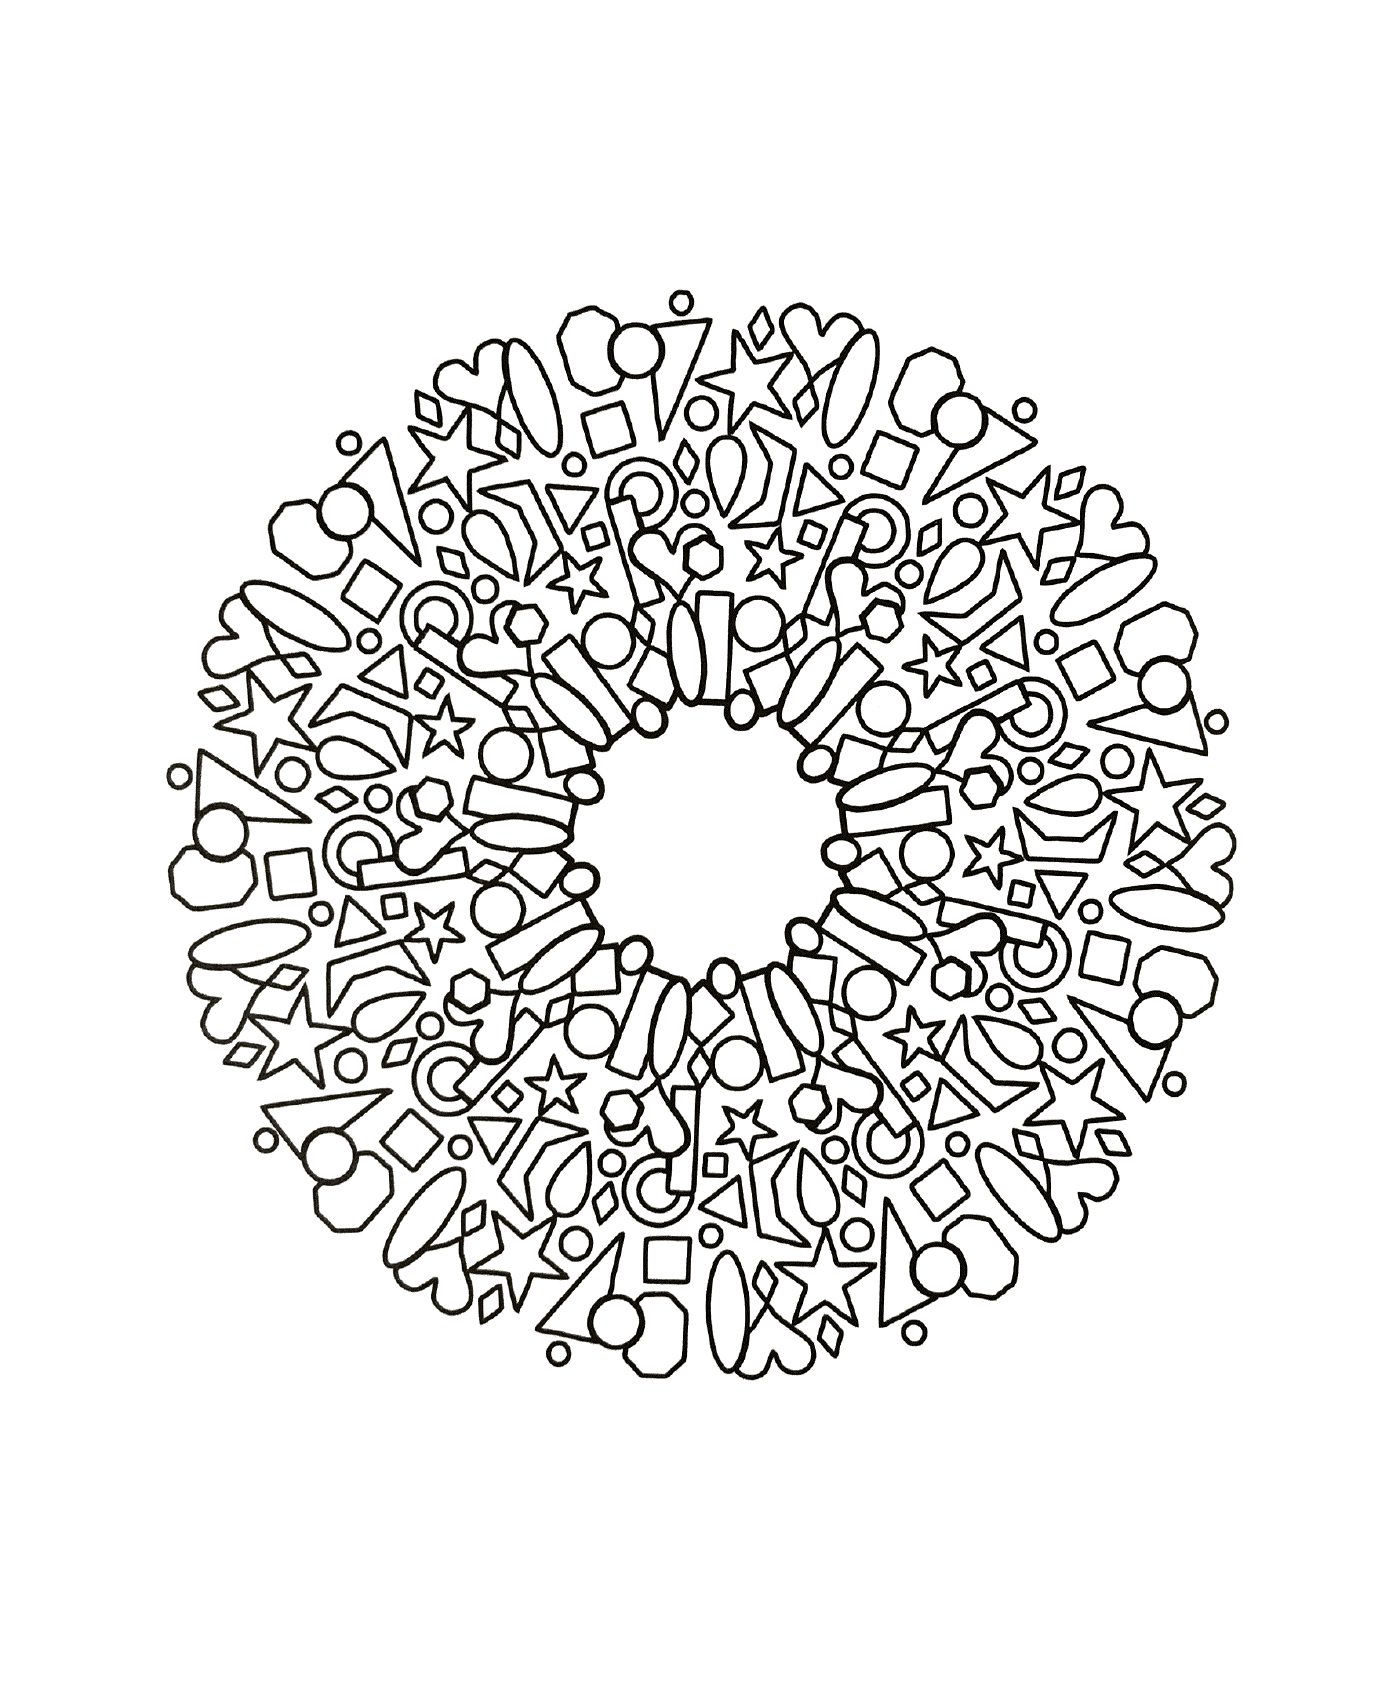  Circular model of various shapes 